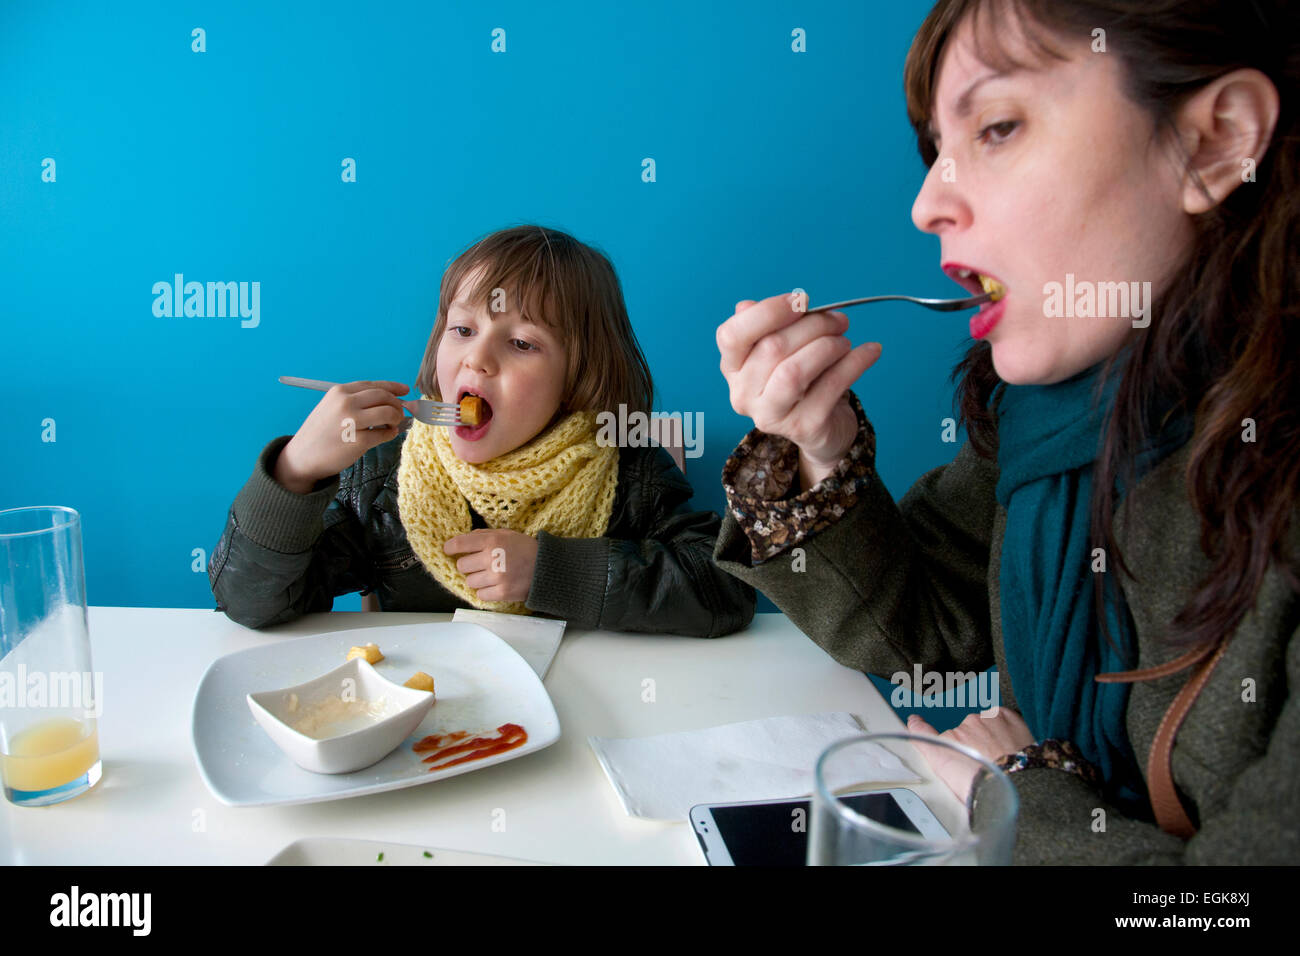 43 años de edad y madre española hijo de seis años comiendo 'patatas bravas', Barcelona, España. Foto de stock